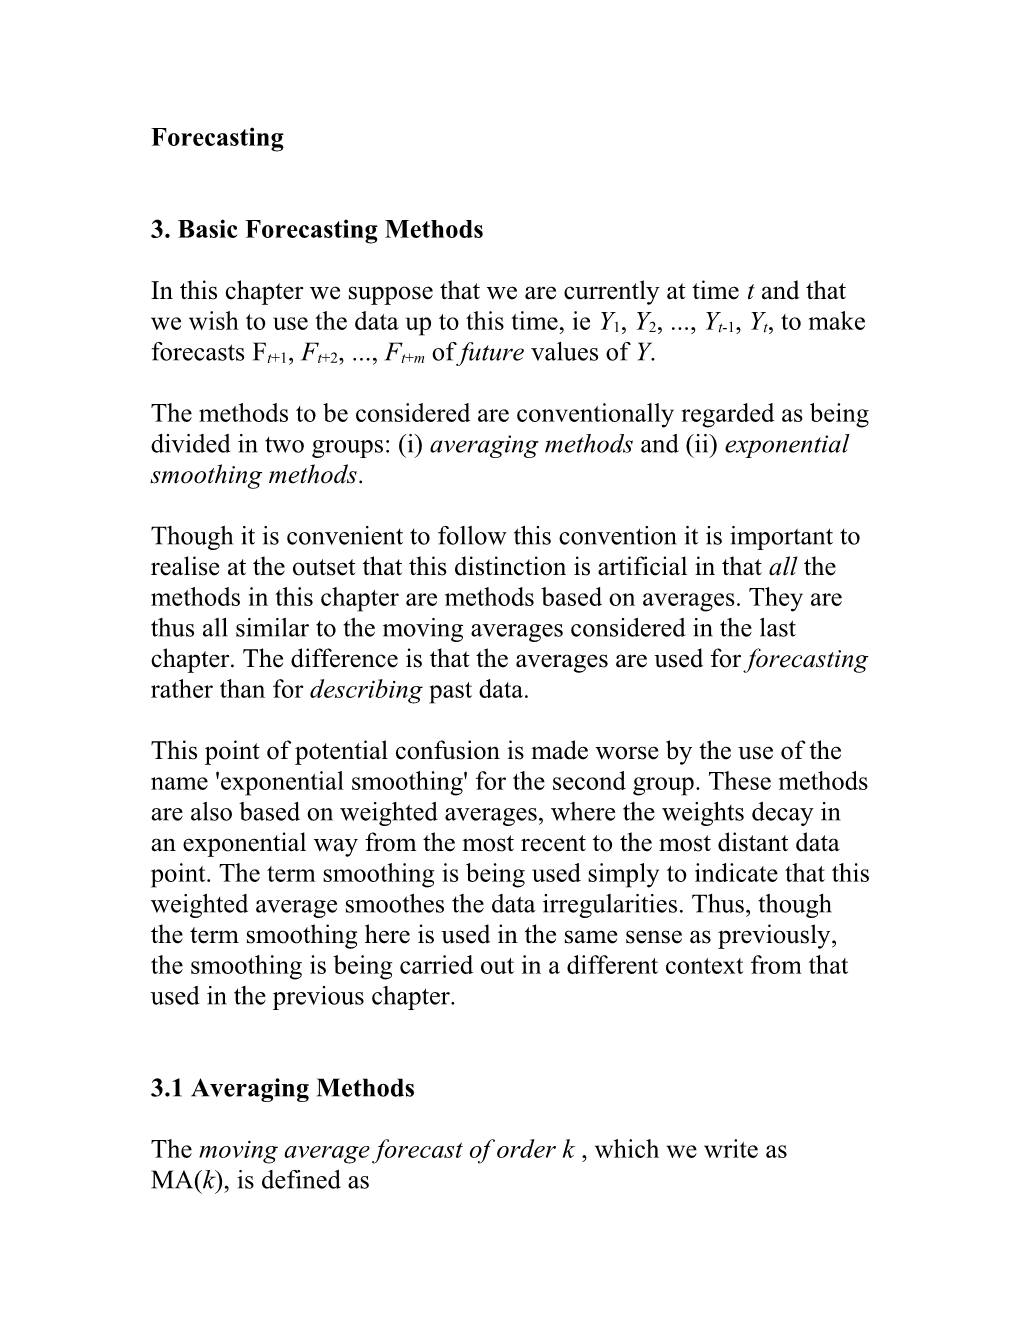 3. Basic Forecasting Methods